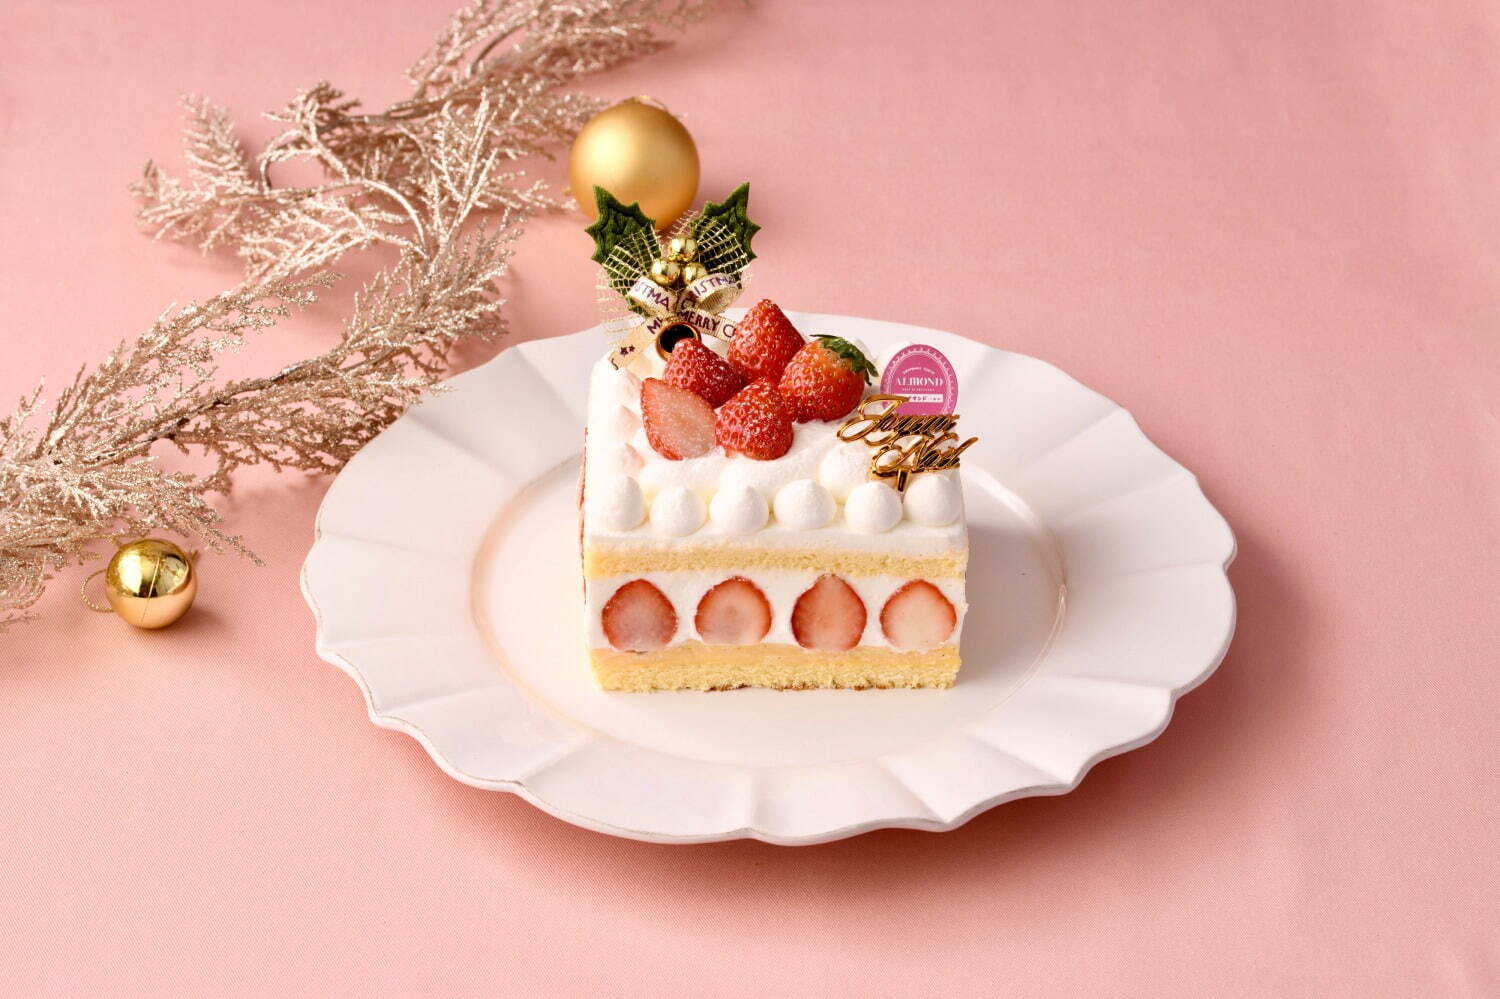 アマンド ショートケーキ いちごさん 4号/12cm 3,980円